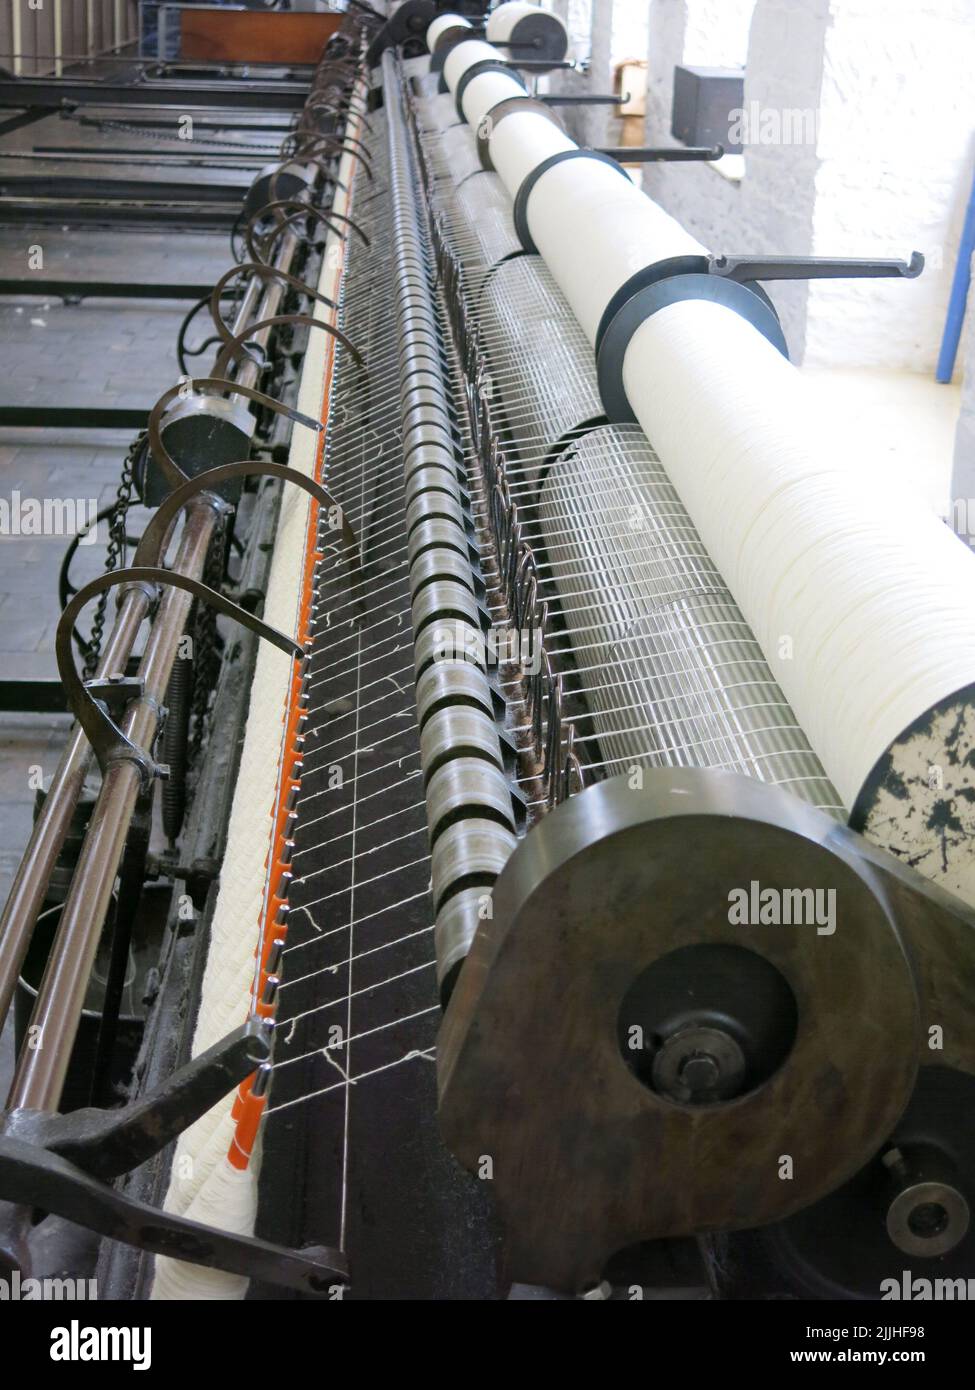 Schottlands industrielles Erbe in den Baumwollmühlen von New Lanark: Das Innere einer Mühle mit Maschinen für Baumwollspinnerei und -Weberei Stockfoto